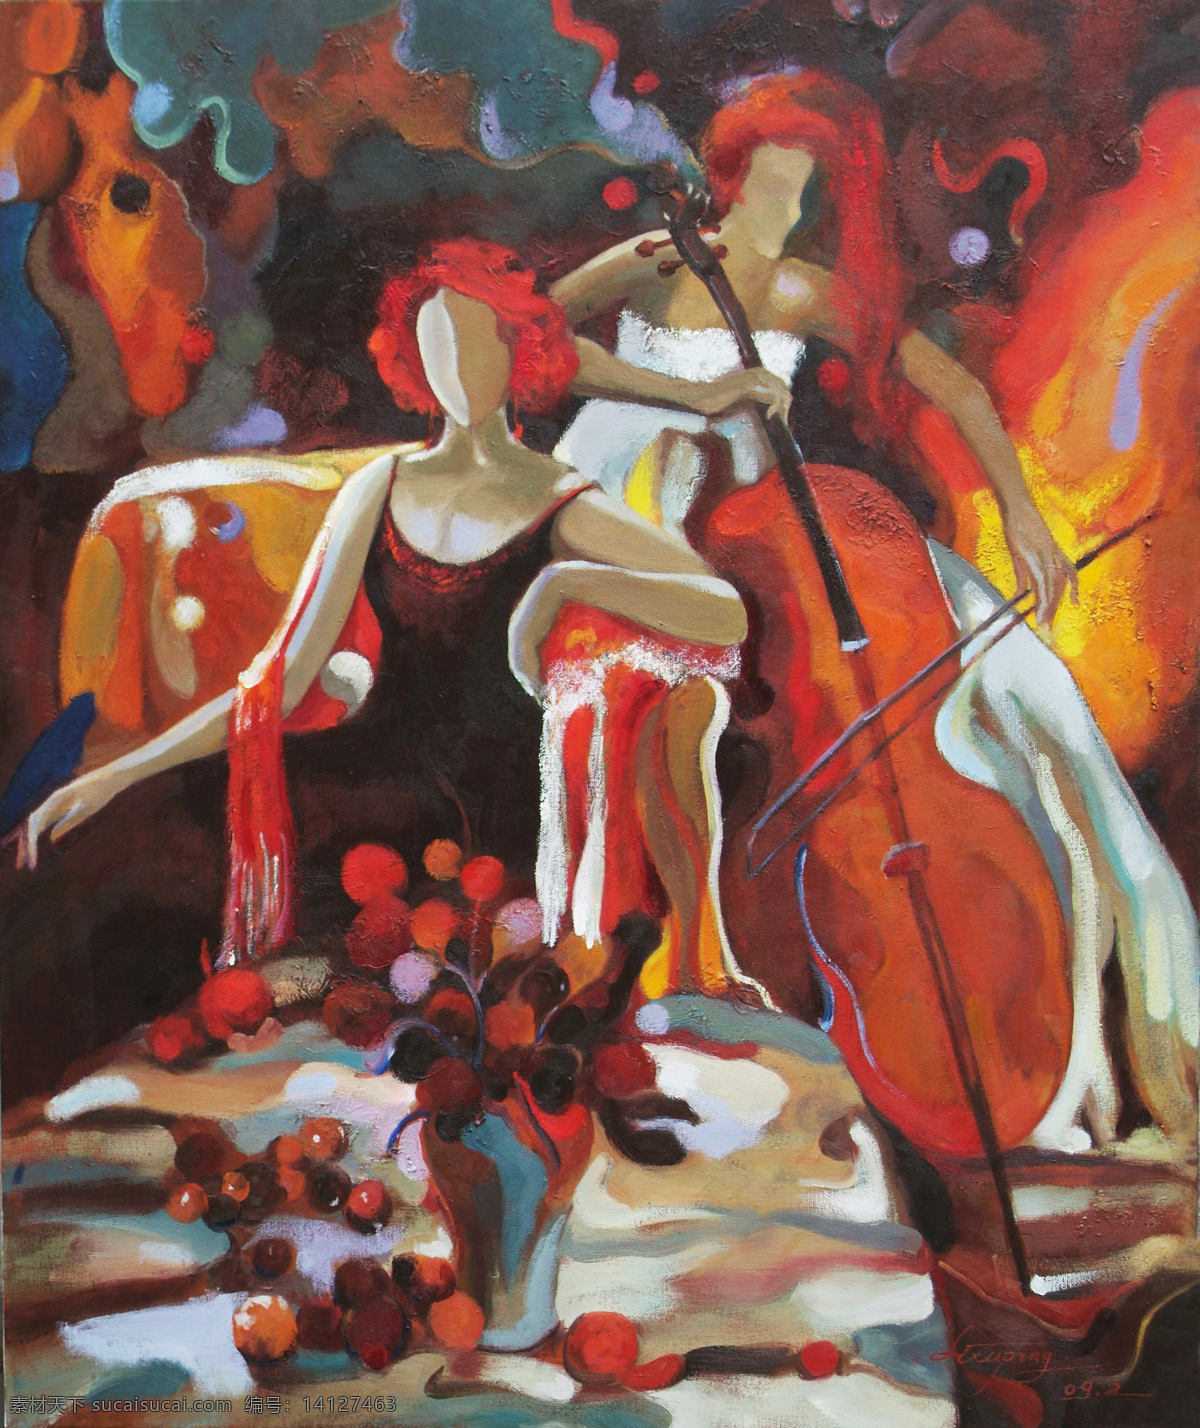 潮流 抽象 大提琴 花瓶 绘画书法 女人 欧洲 欧洲油画 时尚 音乐 现代 油画 沙发 裙子 文化艺术 家居装饰素材